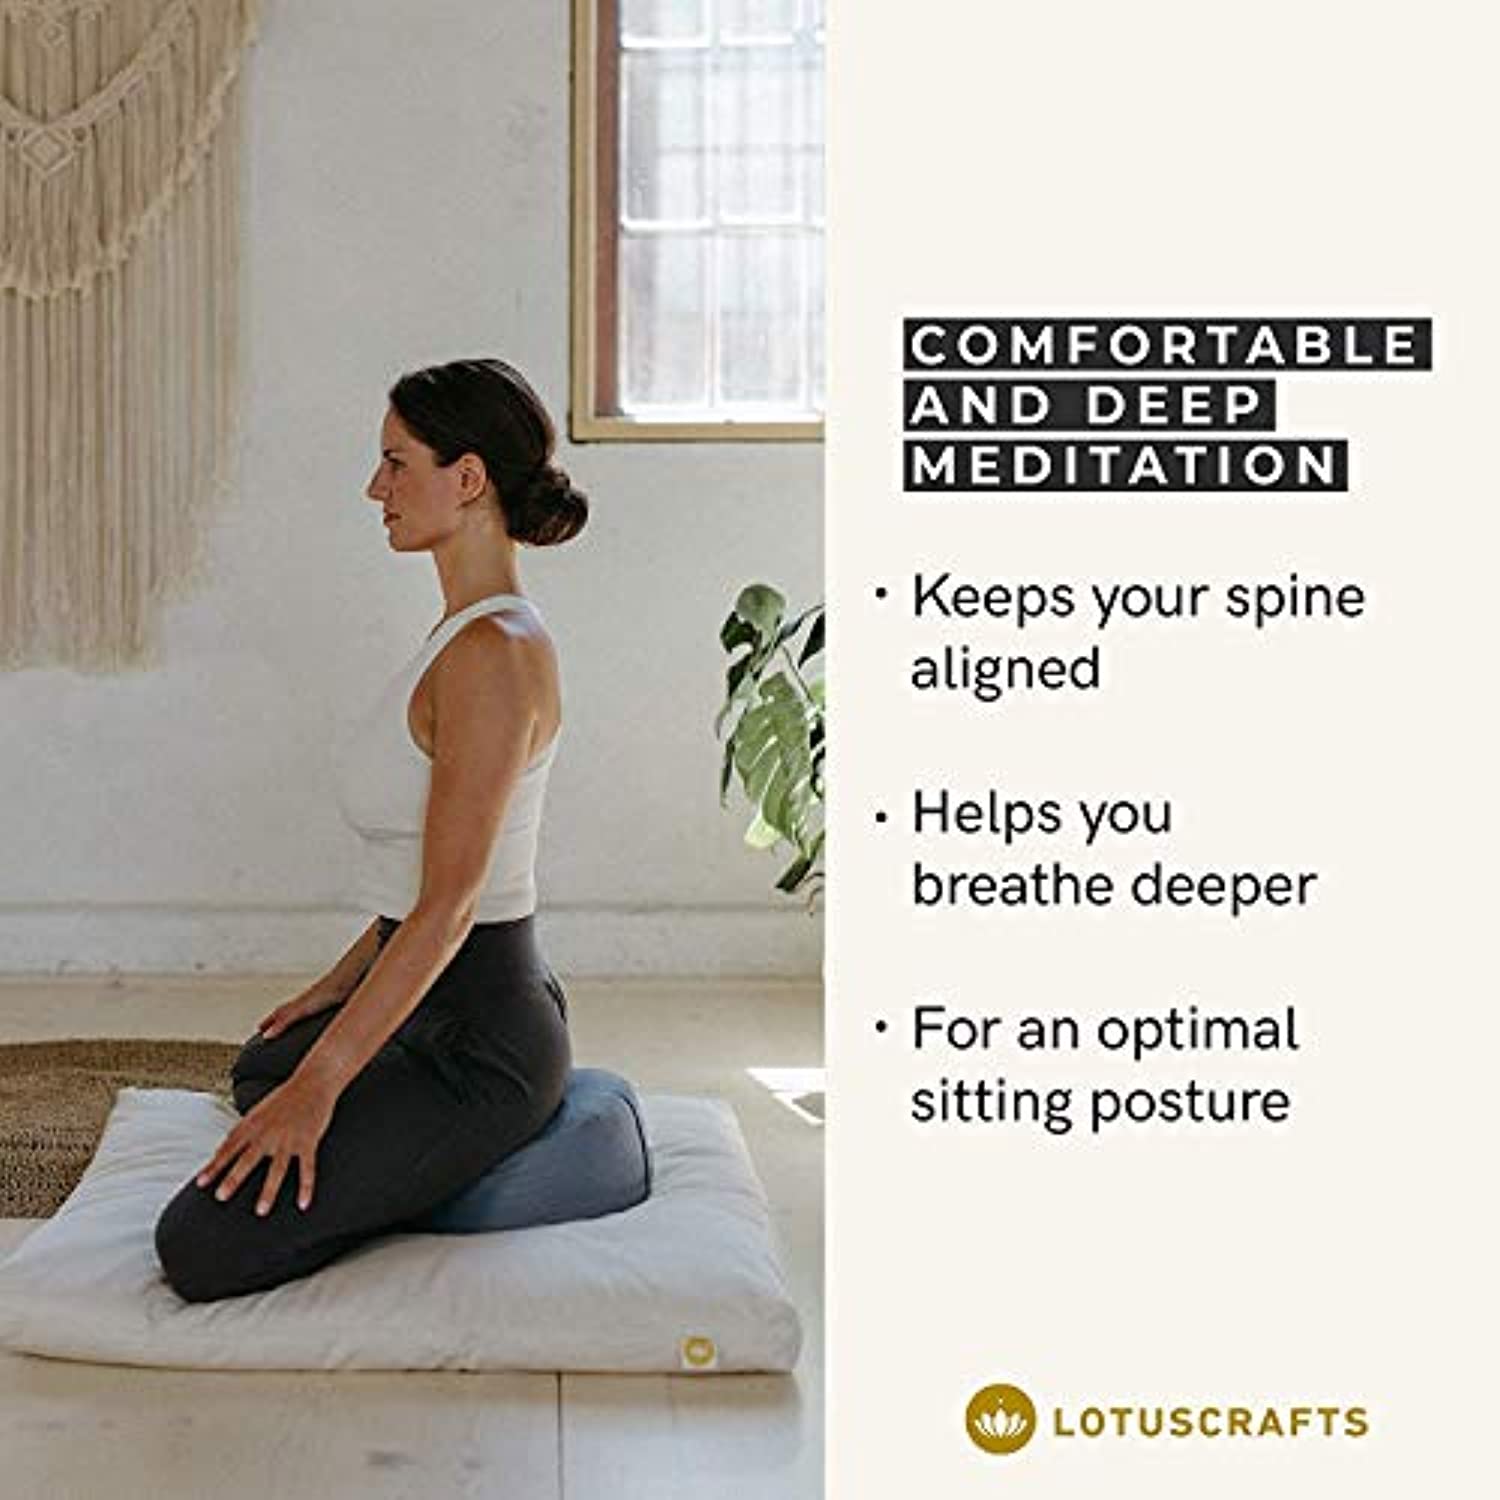 Lotuscrafts Cojin Meditacion Yoga Lotus - Altura 10 cm - Relleno